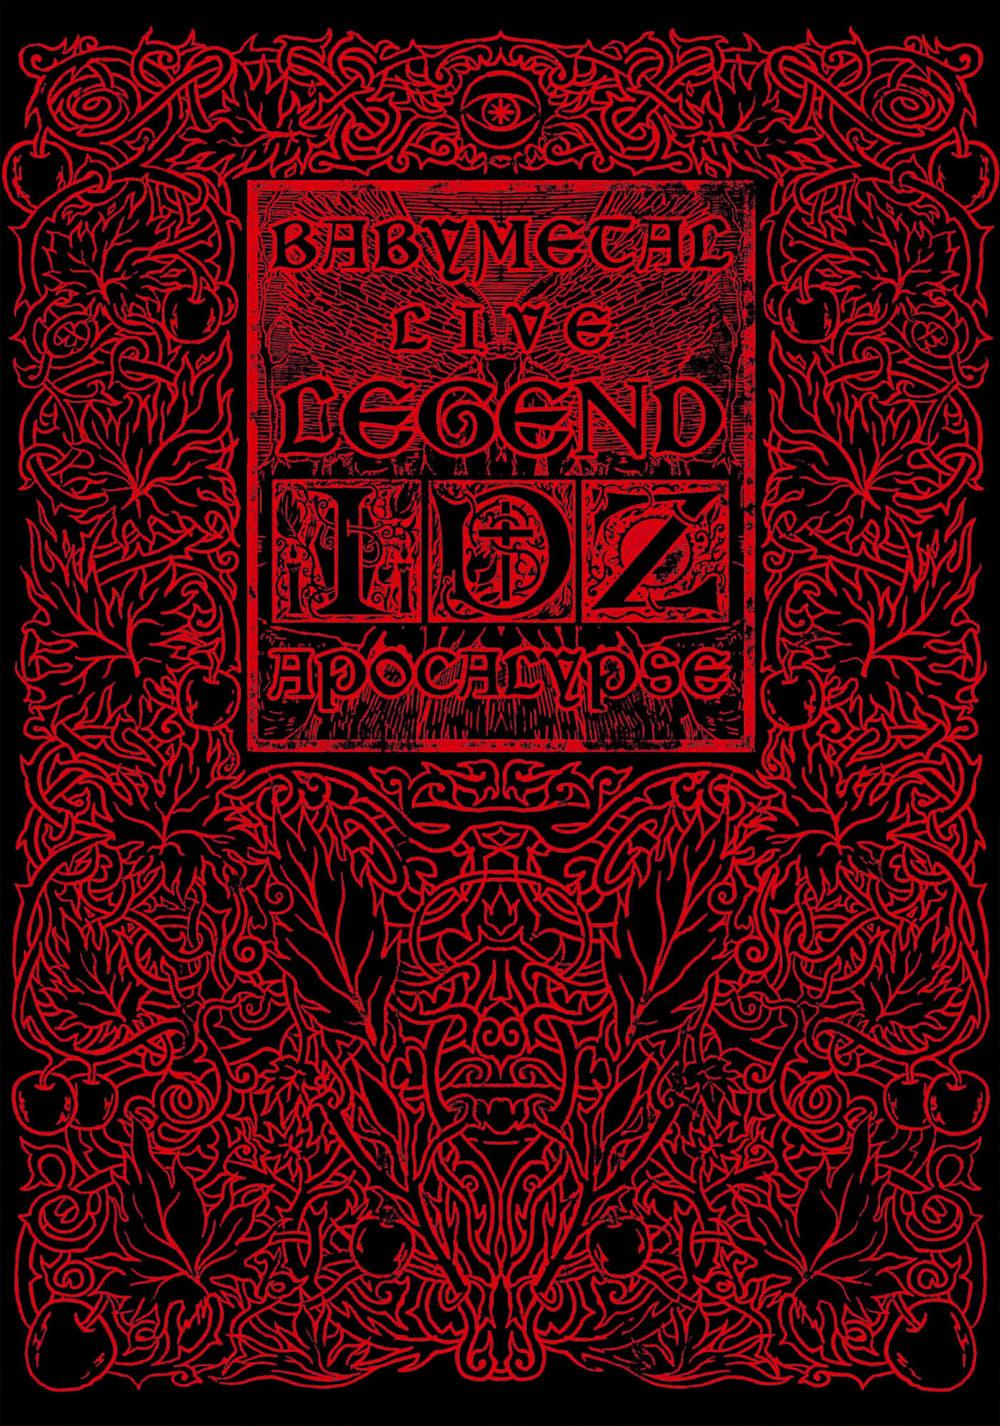 Babymetal: Live Legend I, D, Z Apocalypse poster